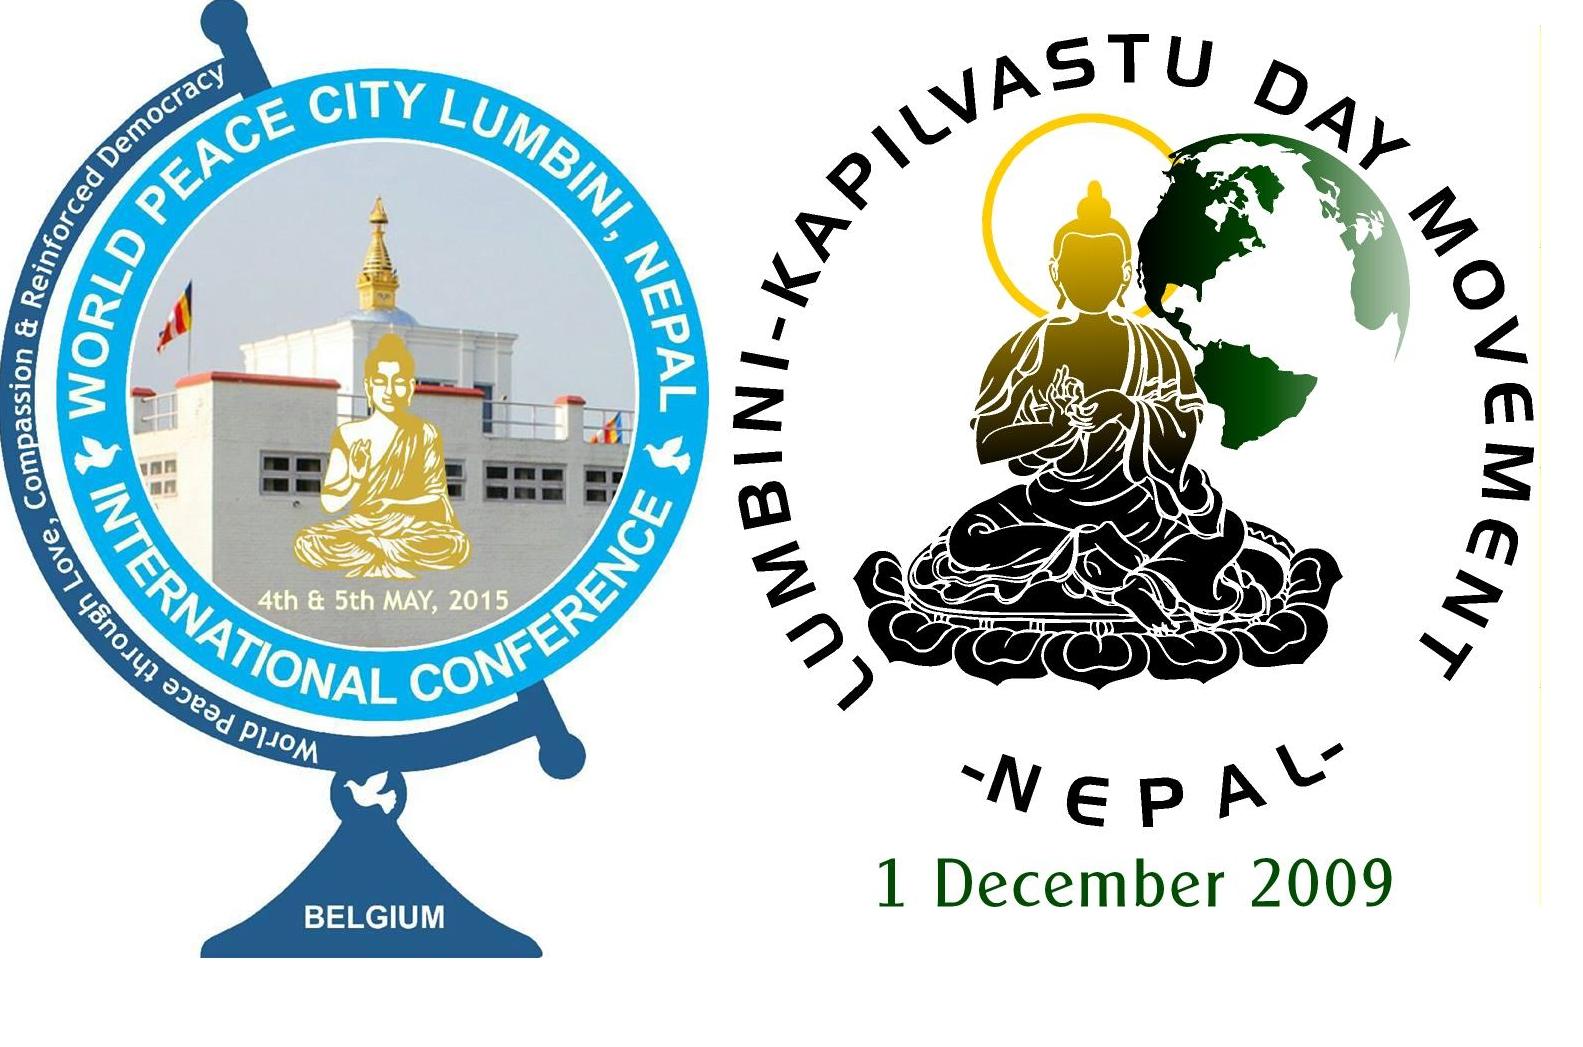 लुम्बिनी-कपिलवस्तु दिवस विश्व अभियान द्वारा आयोजित  अन्तर्राष्ट्रिय सम्मेलनको तयारी अन्तिम चरणमा